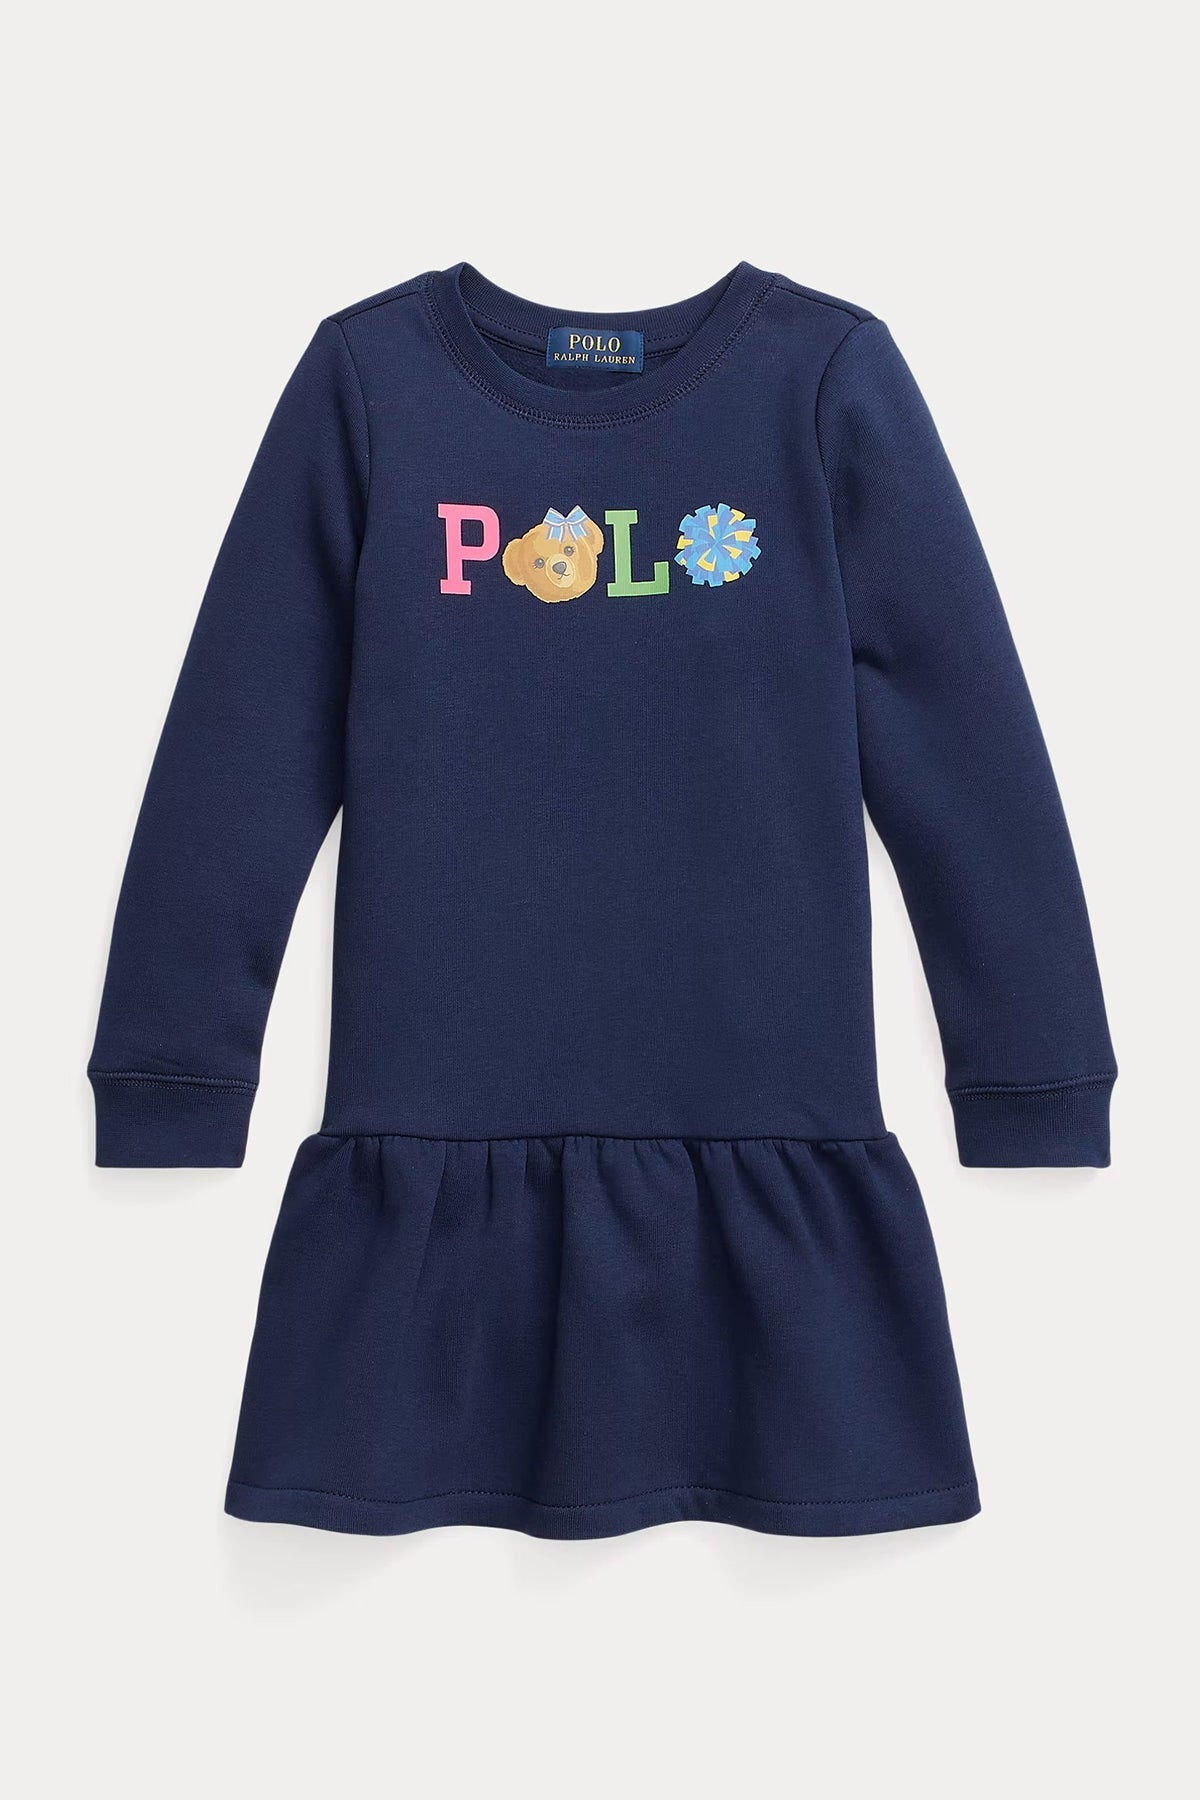 Polo Ralph Lauren Kids 2-4 Yaş Kız Çocuk Polo Bear Sweatshirt Elbise